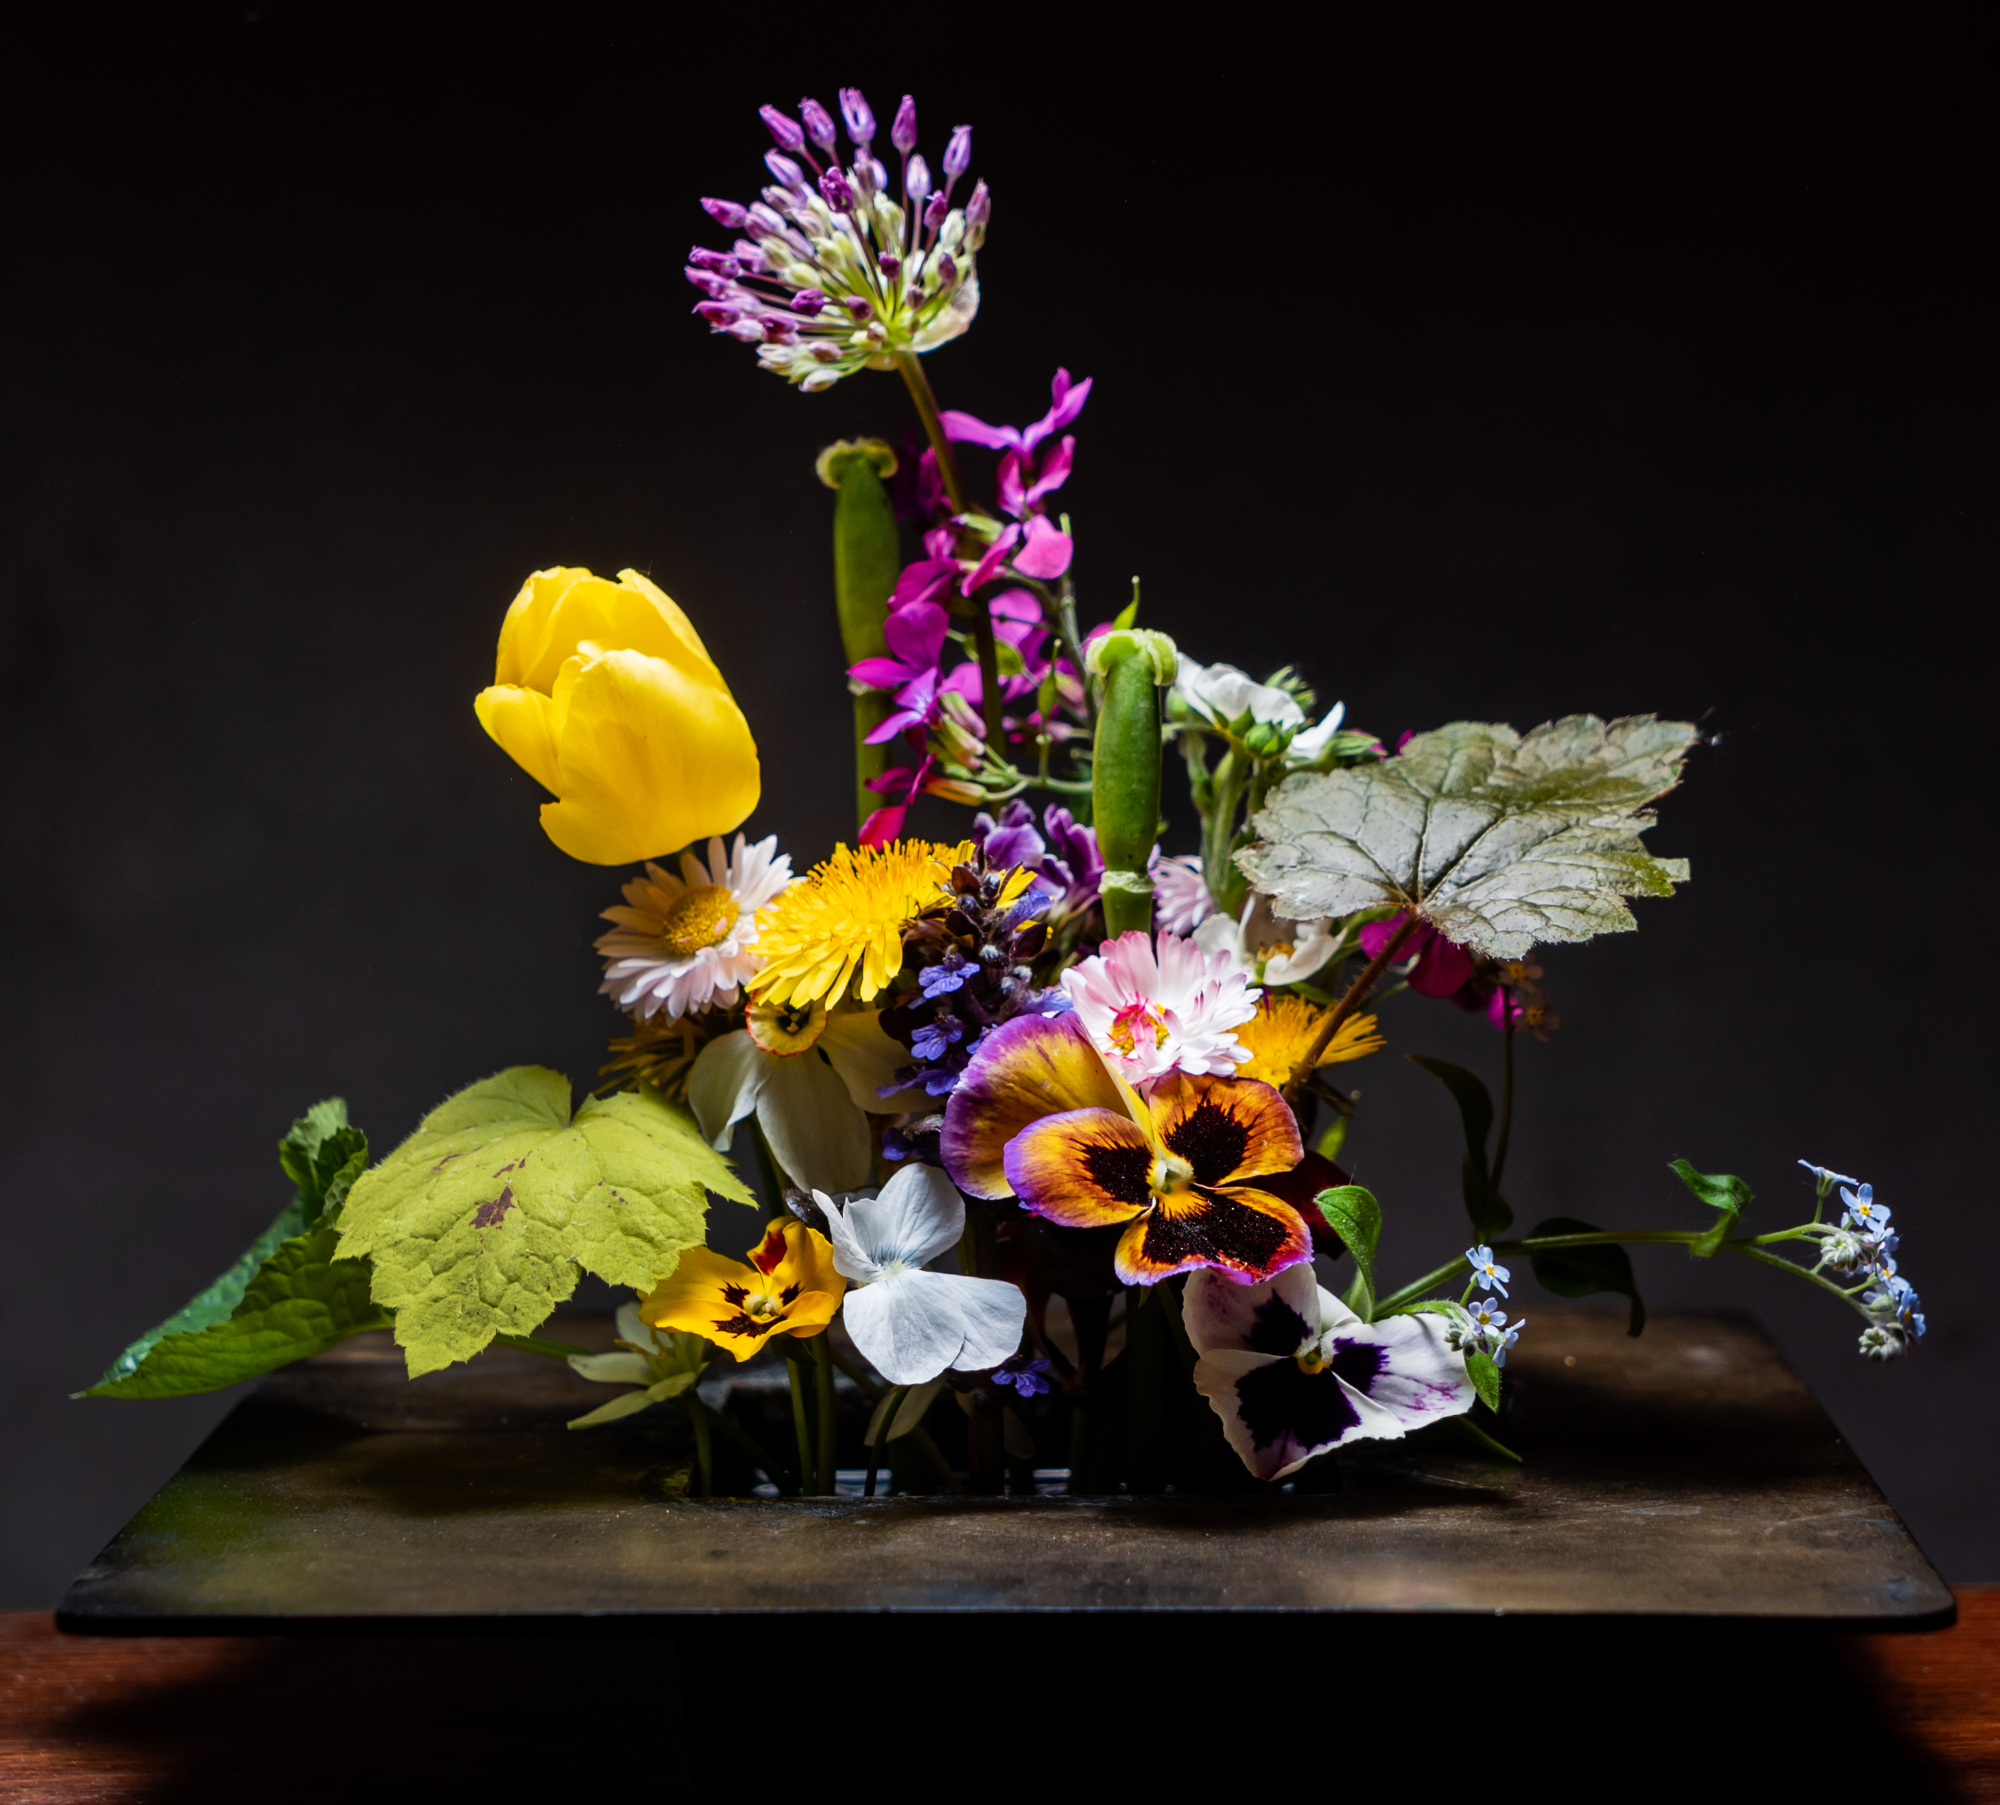 Umetno cvetje in nagrobna ikebana